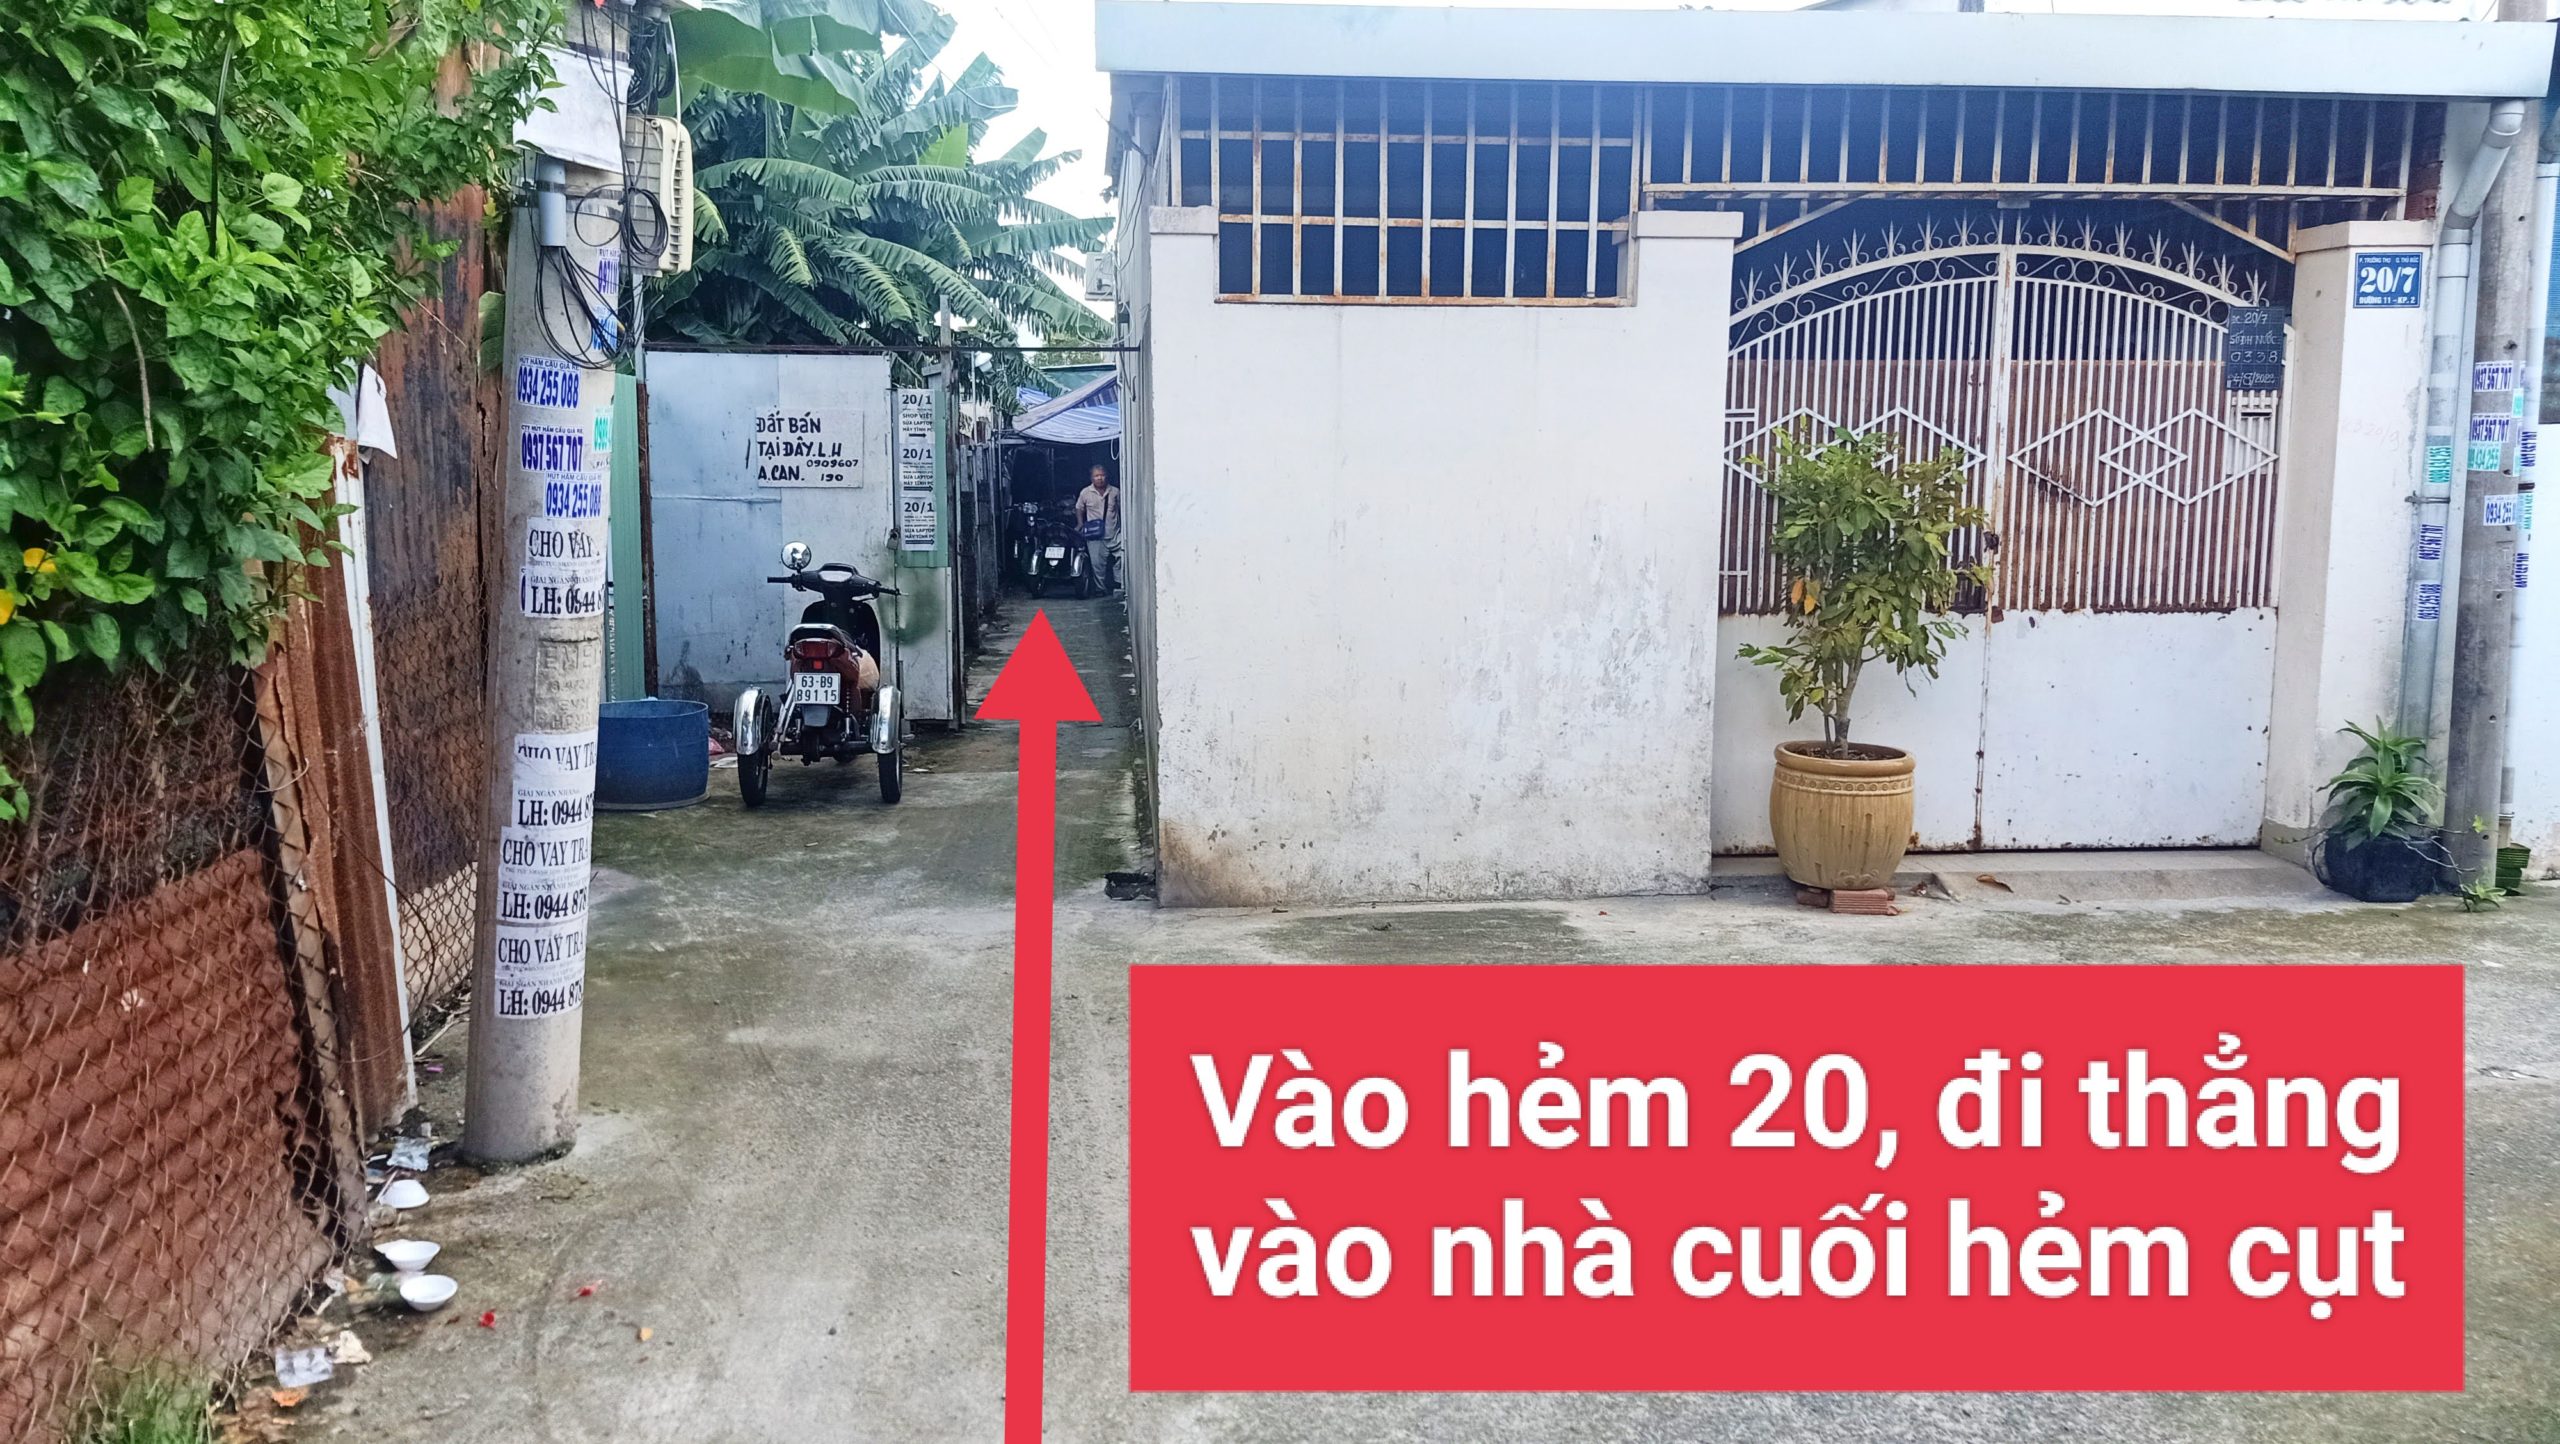 Cửa hàng tin học Shop Việt - Vào hẻm 20, đi thẳng vào nhà cuối hẻm cụt, cứ đi thẳng không rẽ không quẹo nhé